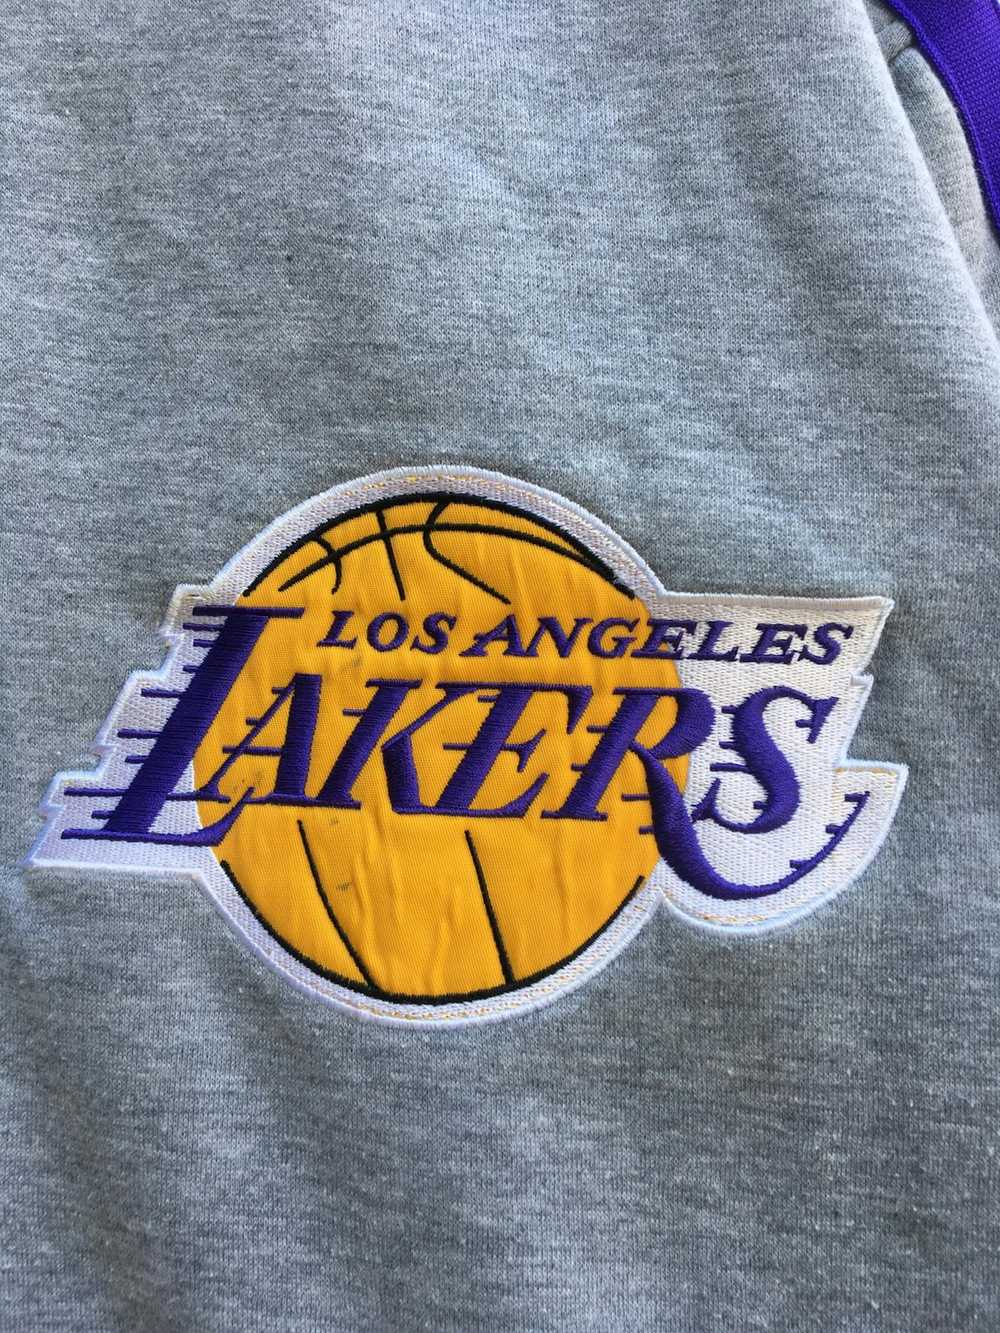 L.A. Lakers × Lakers × NBA Vintage LA Lakers NBA … - image 5